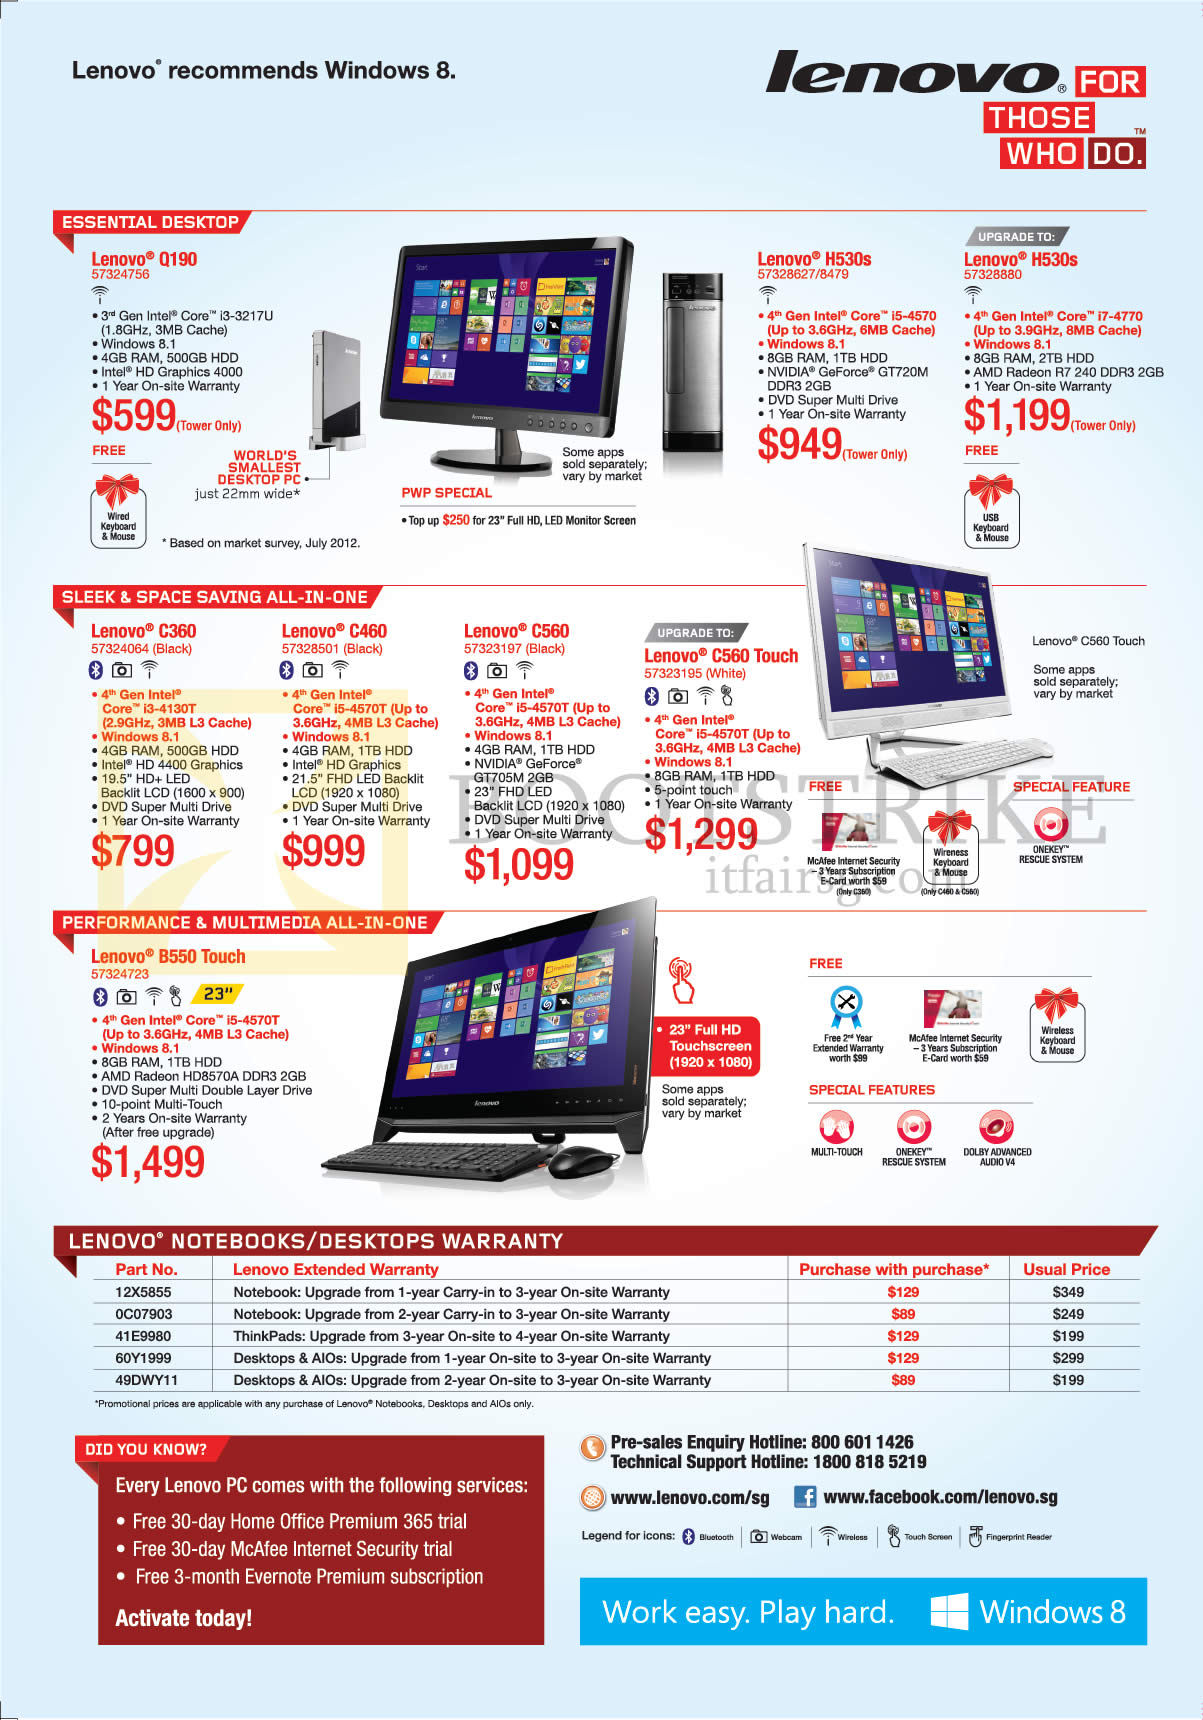 PC SHOW 2014 price list image brochure of Lenovo Desktop PCs, AIO, Warranty, Q190, H530s, C360, C460, C560, C560 Touch, B550 Touch